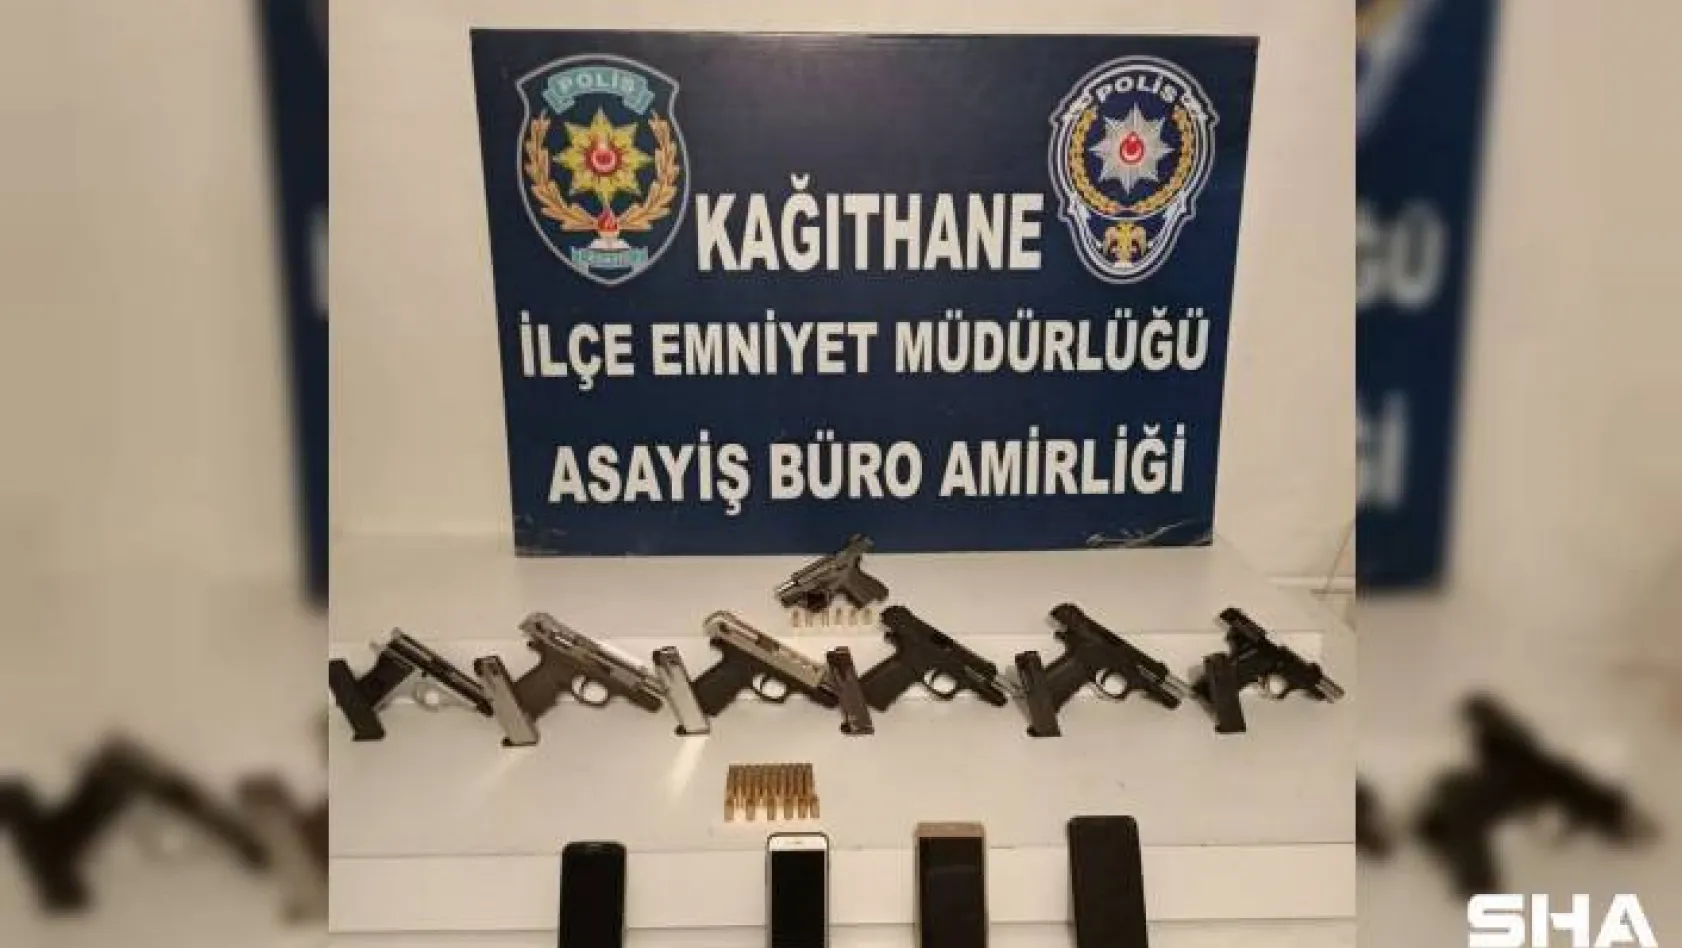 Kağıthane'de yasa dışı silah ticareti operasyonu: 7 tabanca ele geçirildi